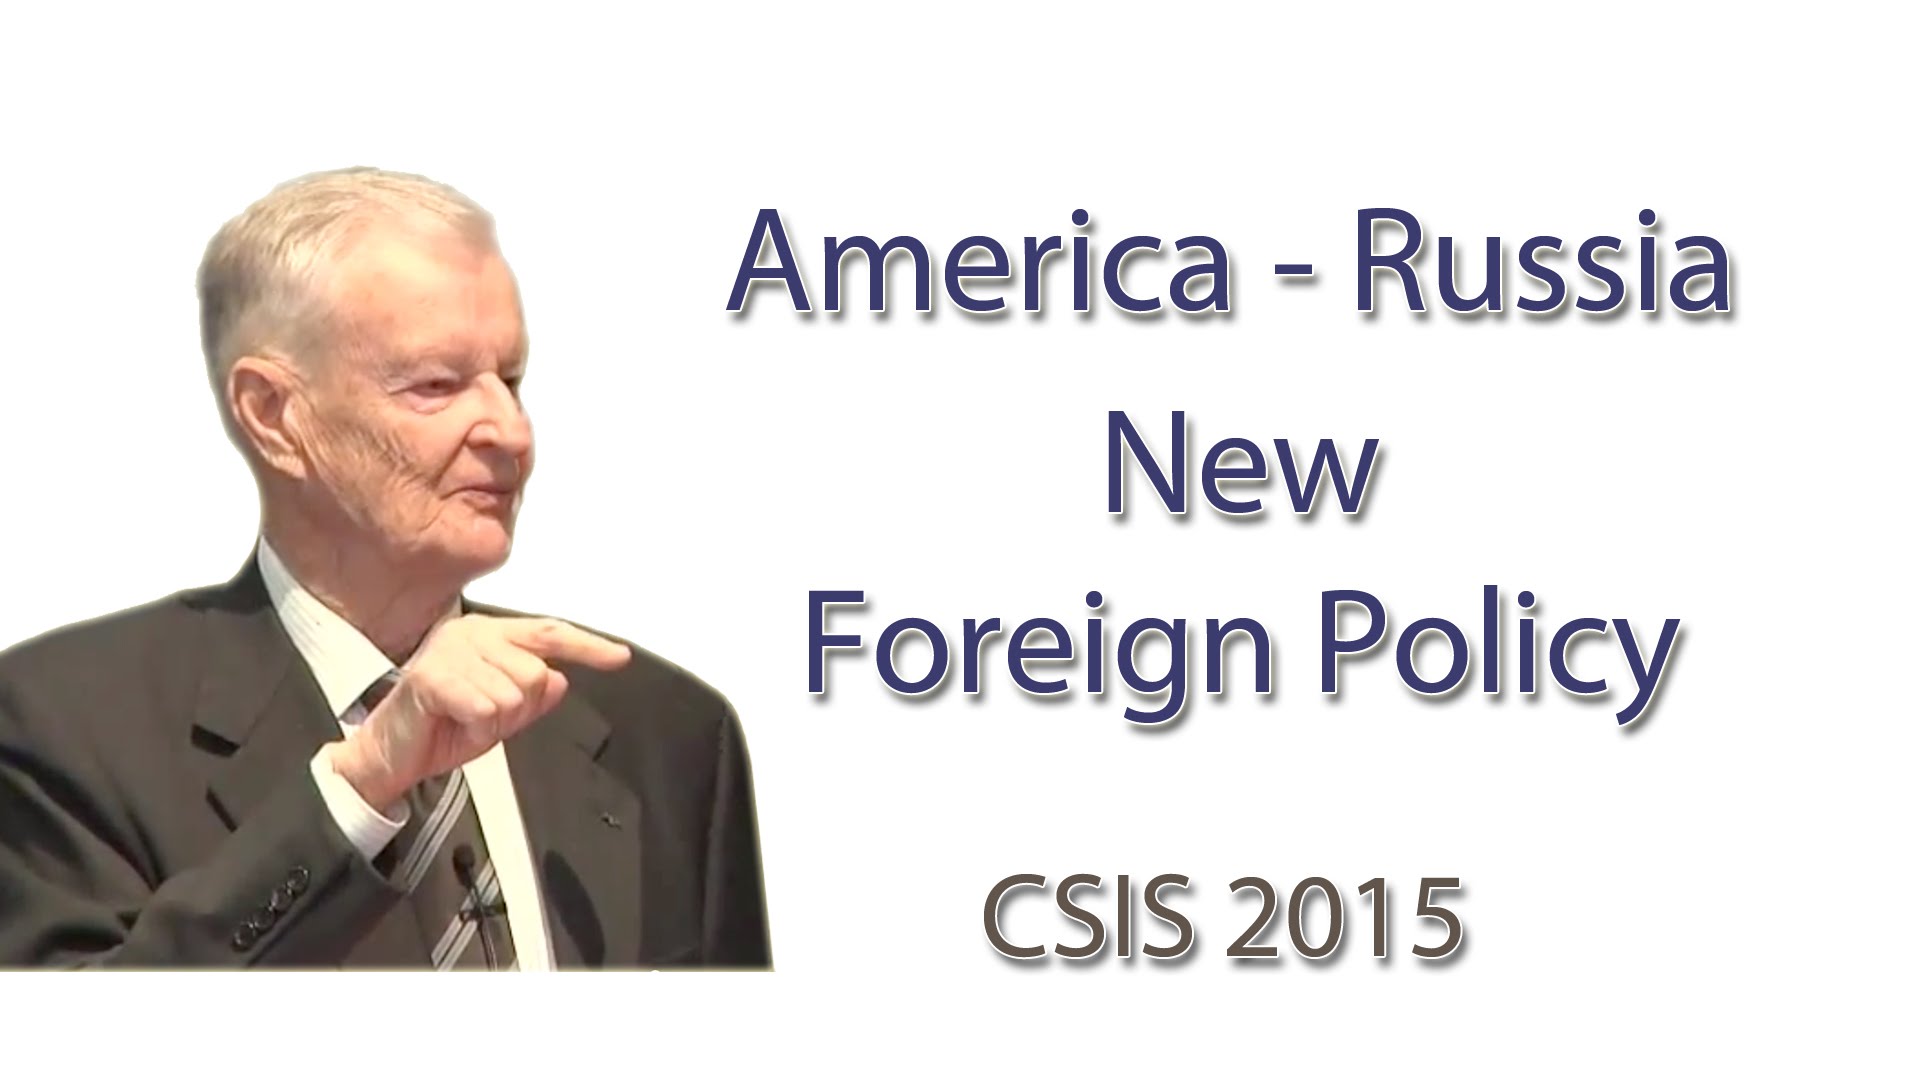 New Foreign Policy – America Russia – history channel documentary – Zbigniew Brzezinski 2015